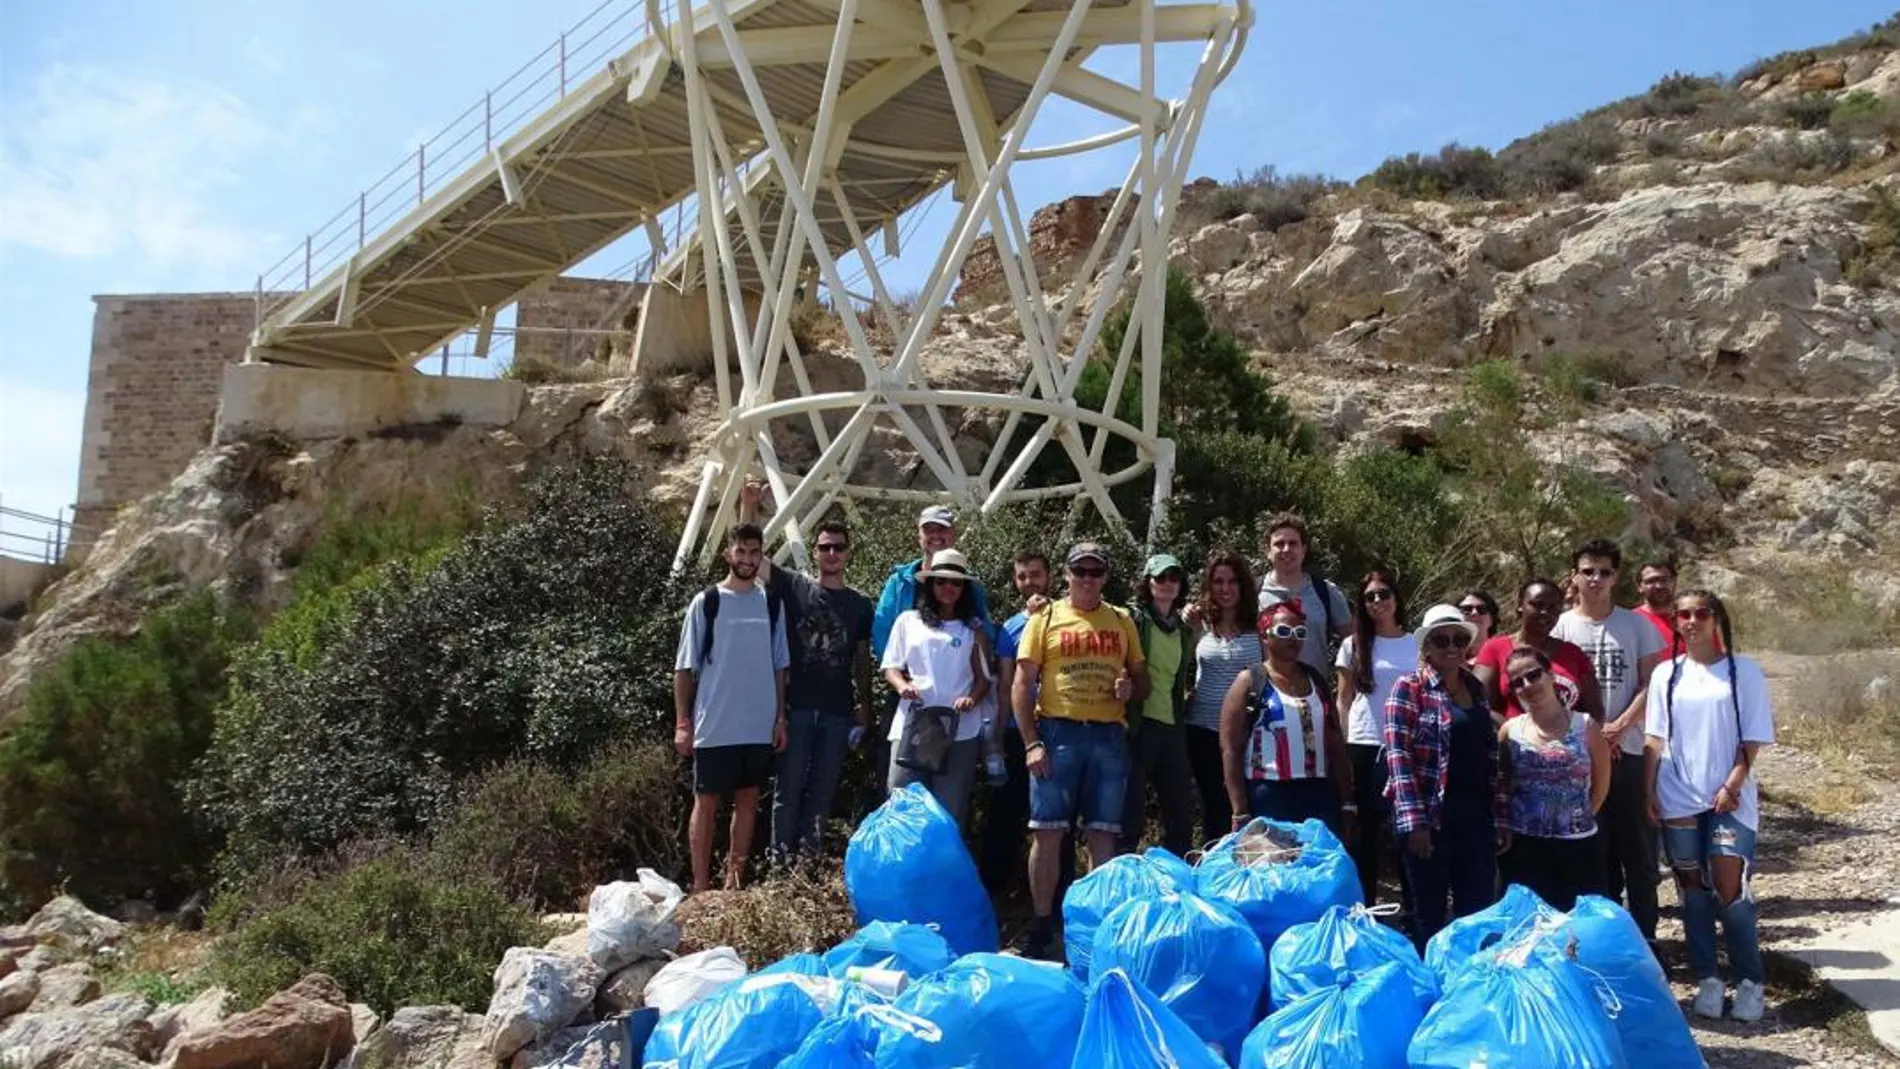 Los voluntarios junto a algunas de las bolsas donde se recogieron los numerosos residuos tirados en la zona